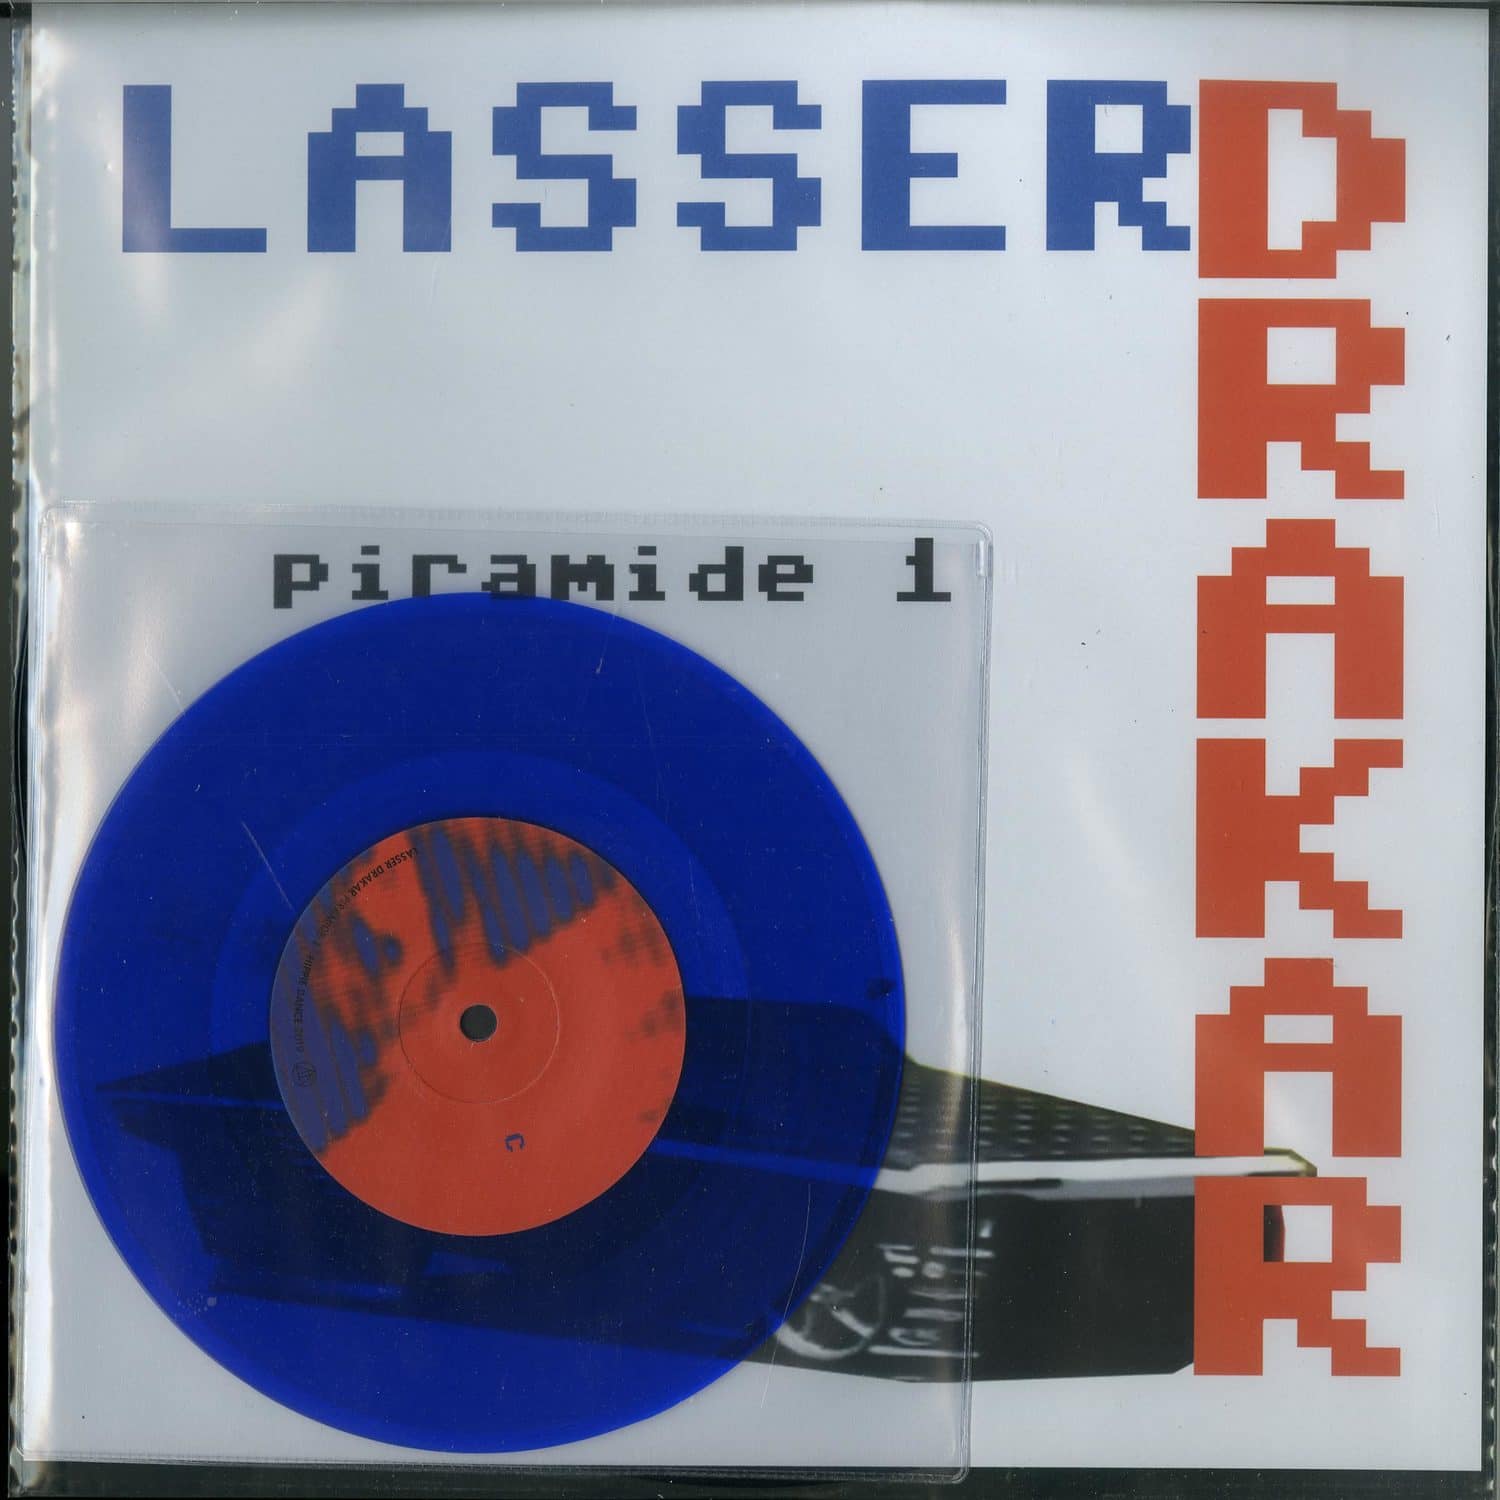 Lasser Drakar - PIRAMIDE 1 